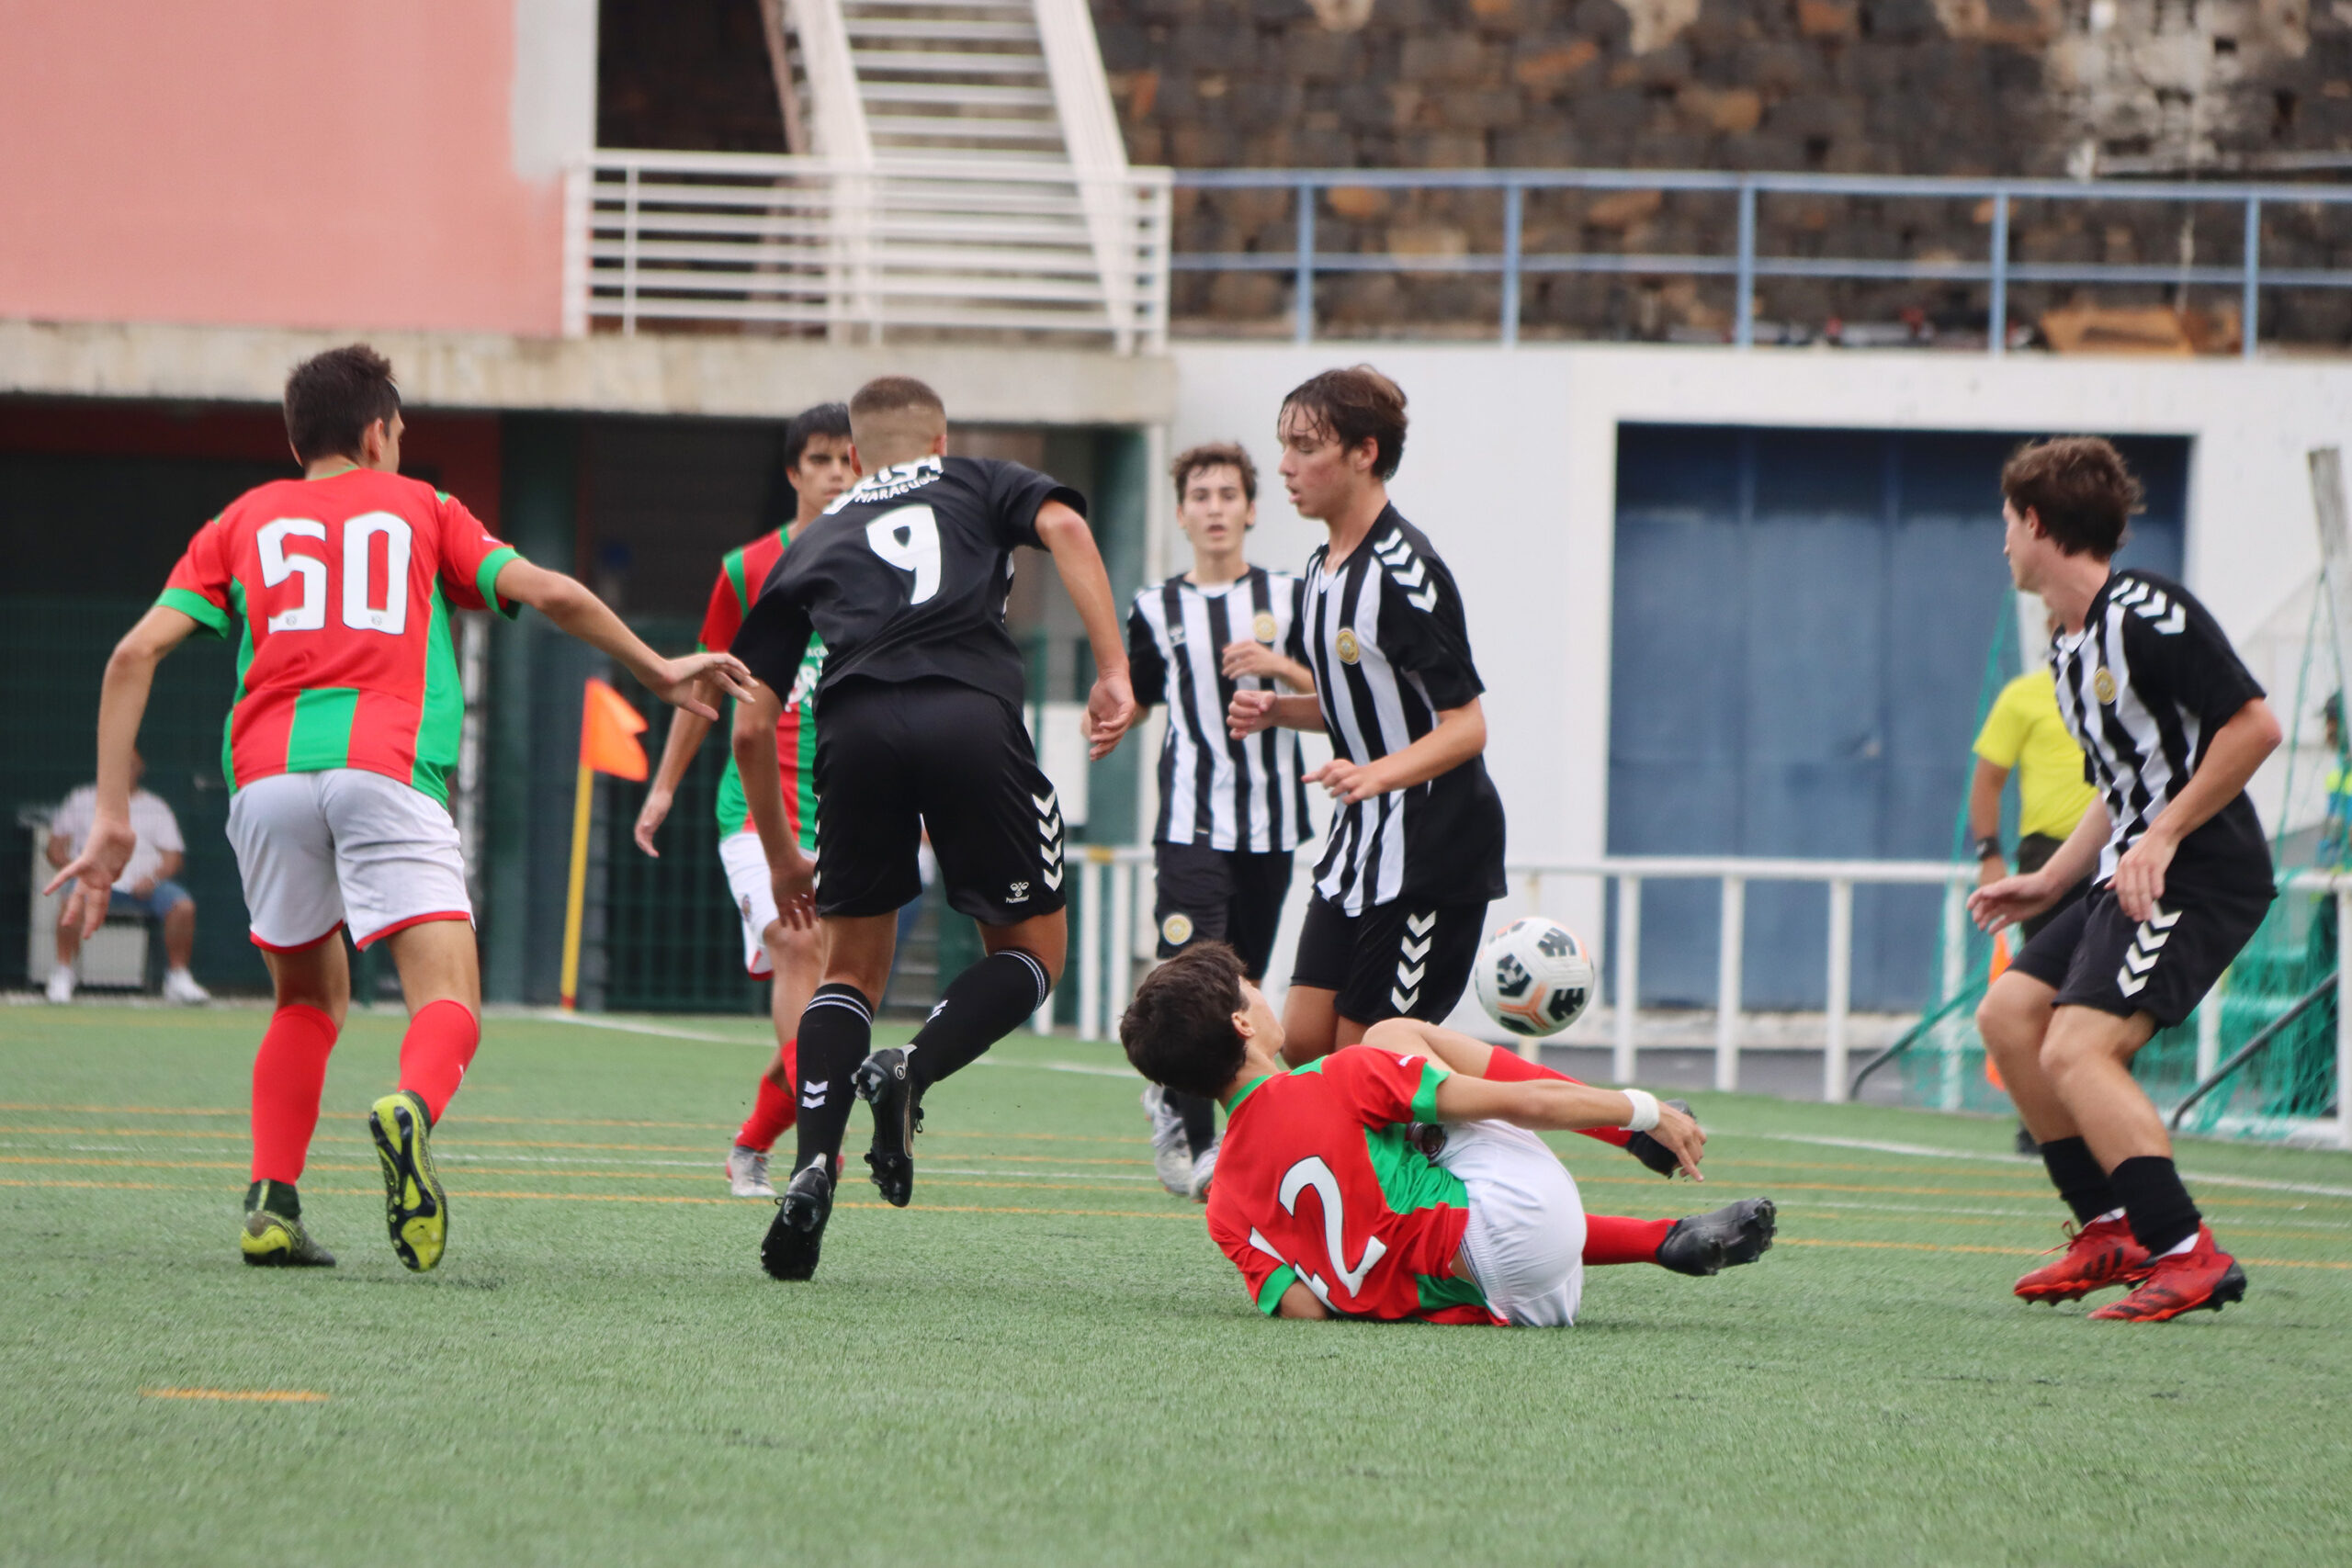 Juvenis com sortes distintas - Clube Desportivo Nacional - Madeira